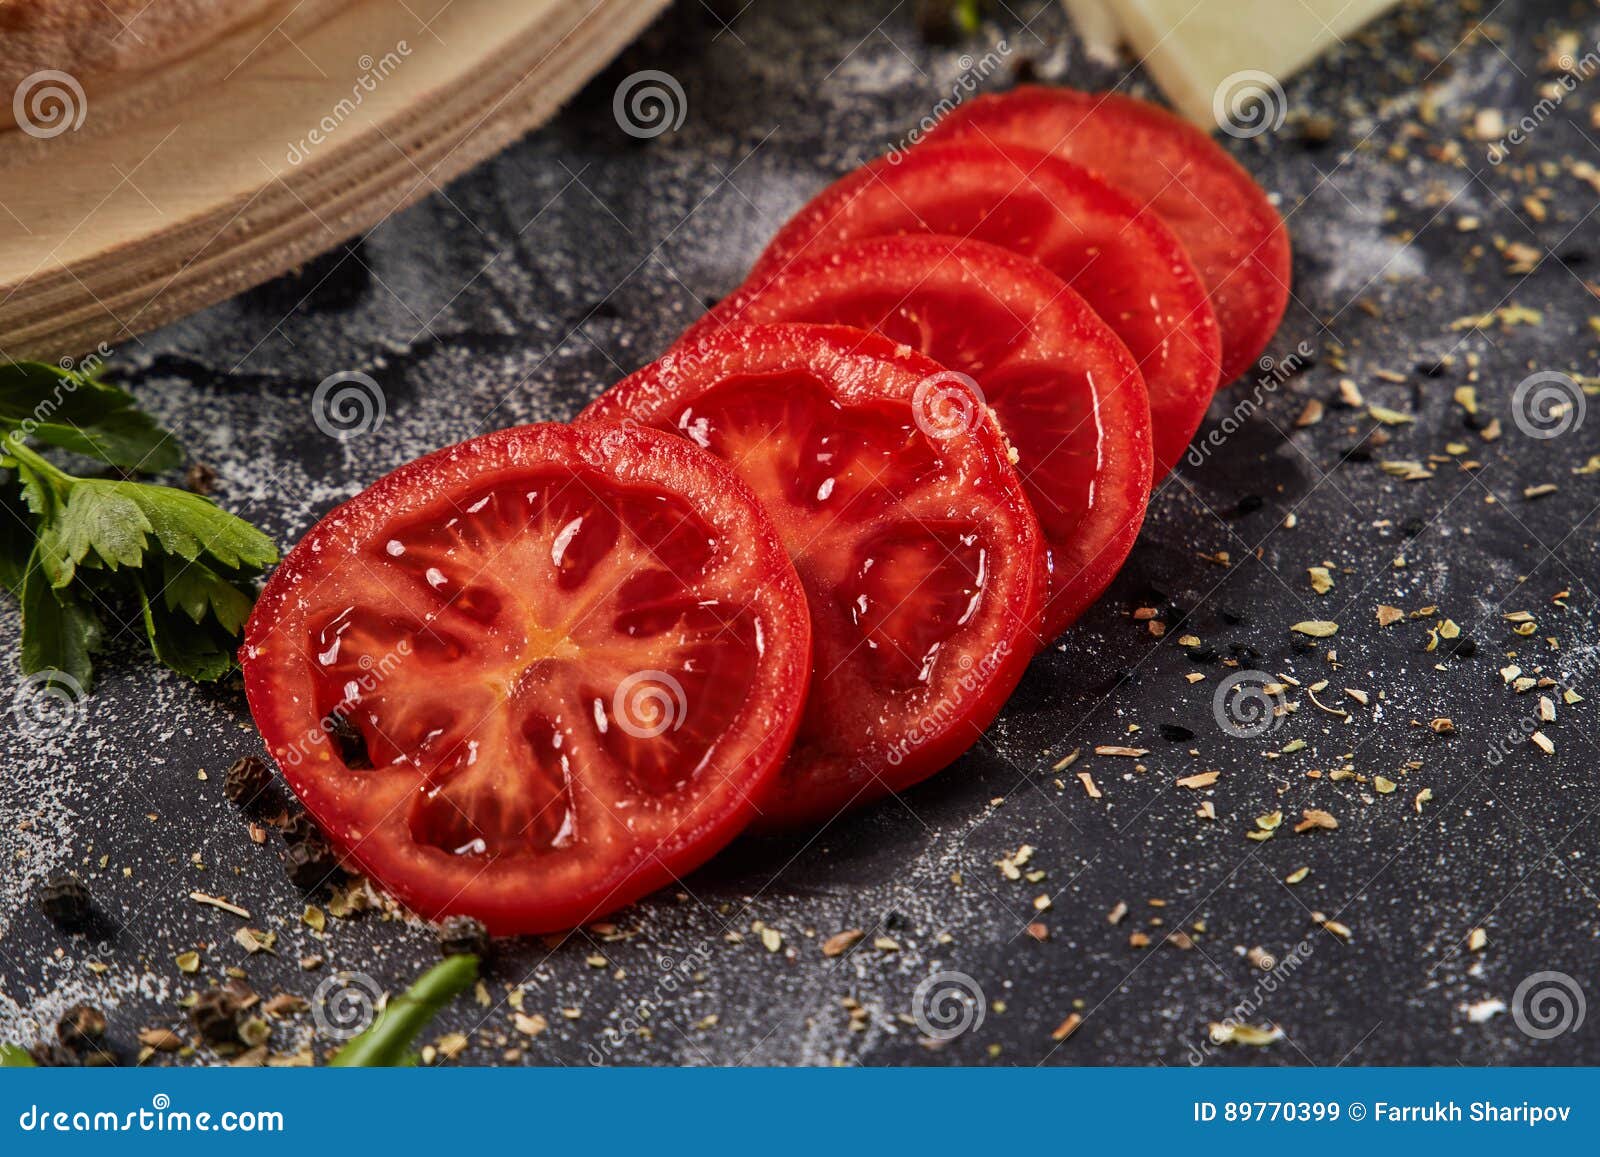 томаты для пиццы соус фото 87